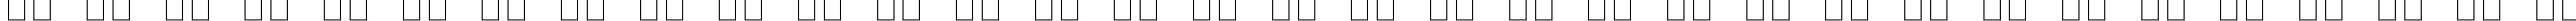 Пример написания русского алфавита шрифтом Lucida Bright Math Extension